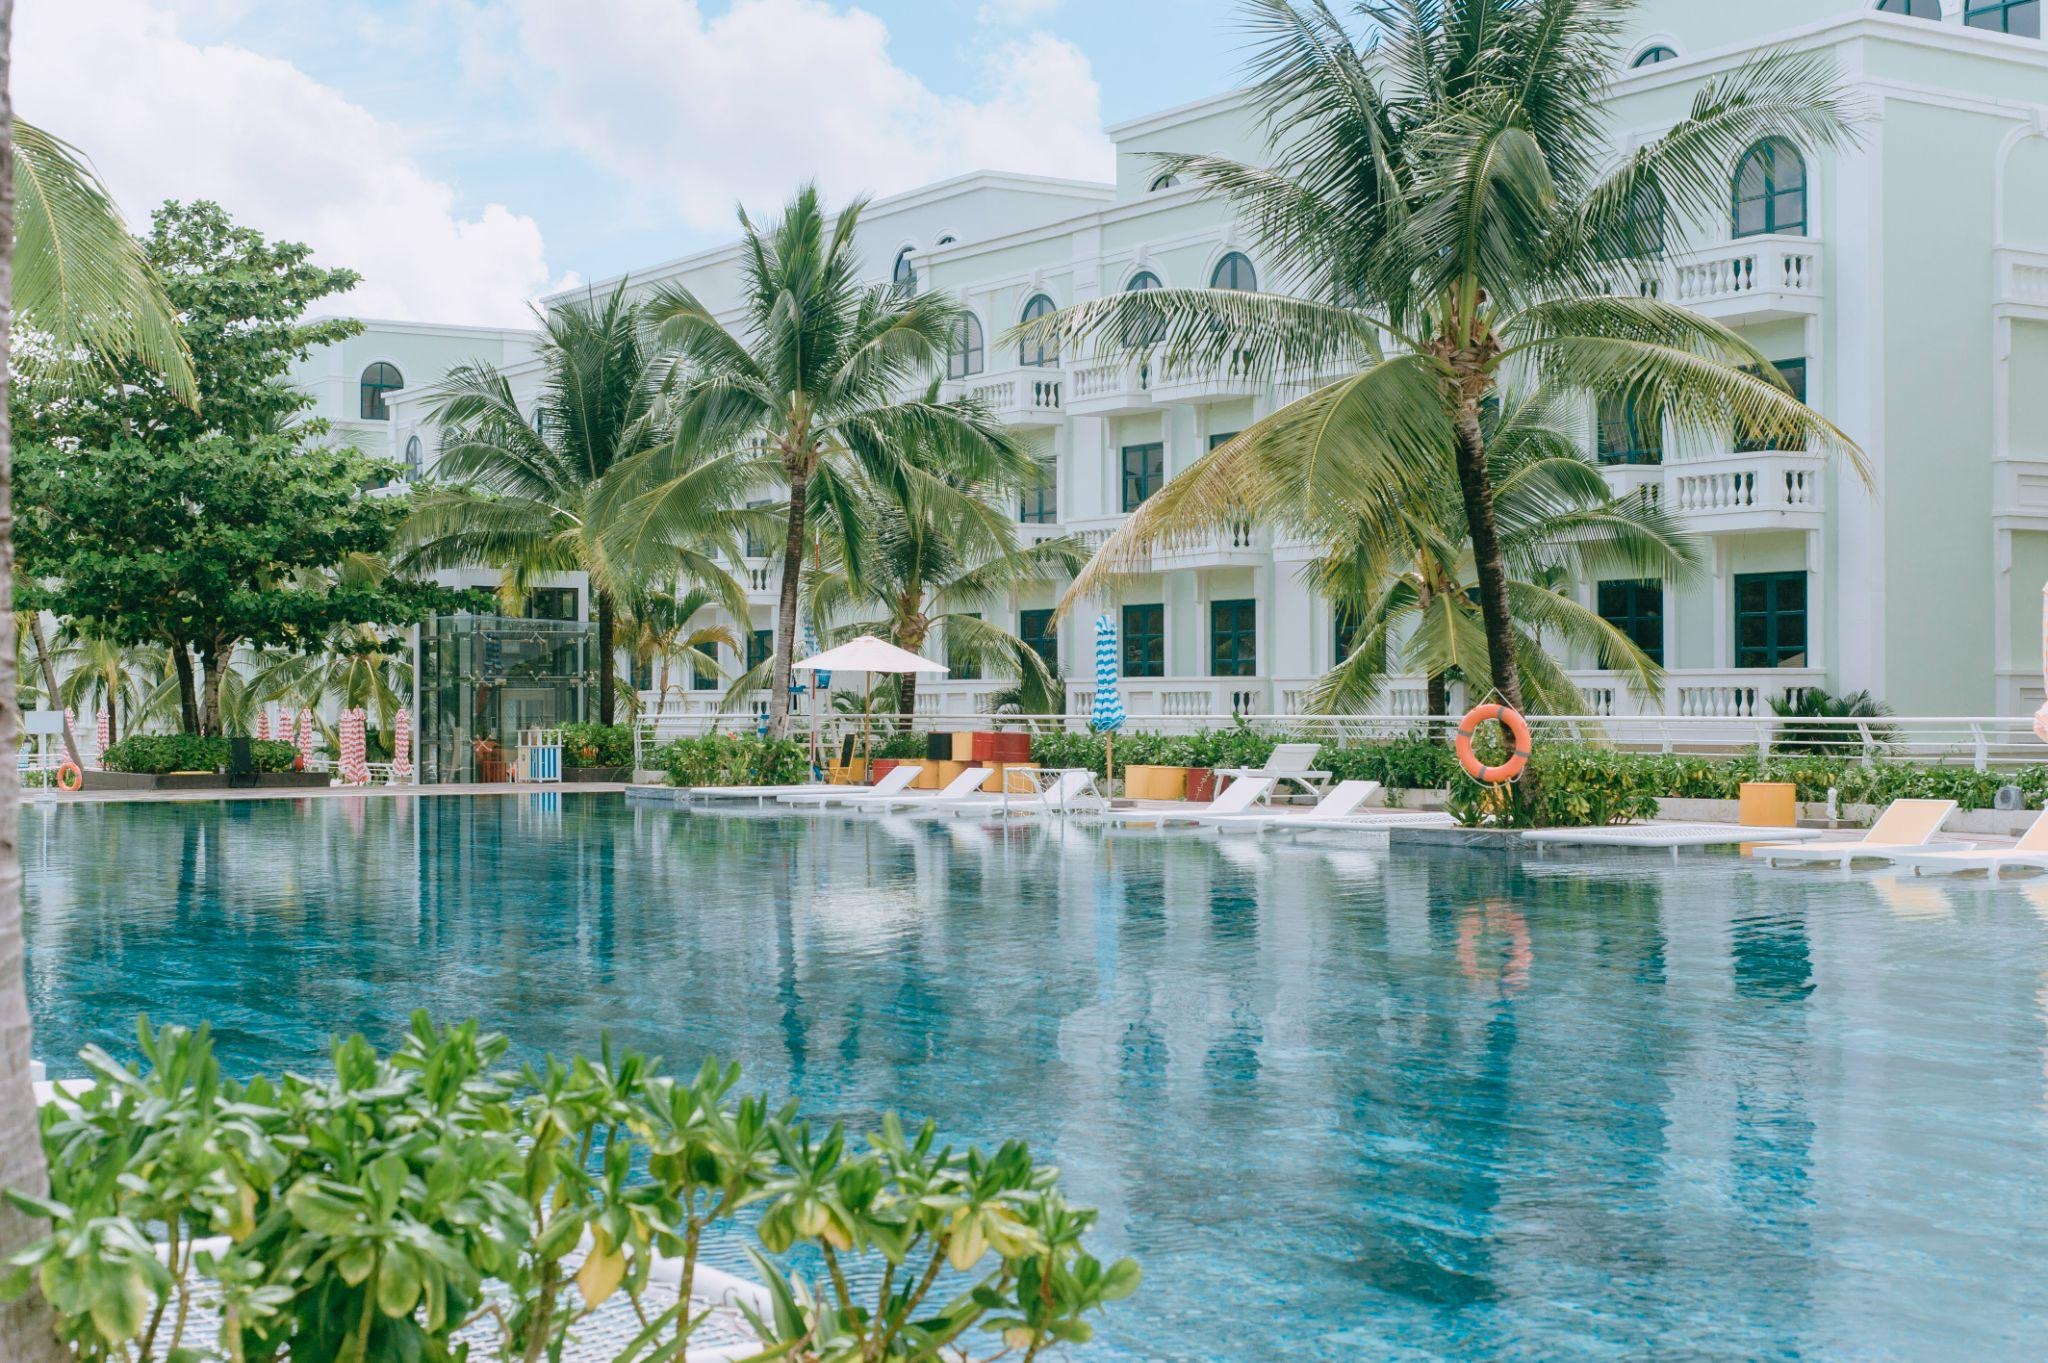 Bể bơi “tuyệt phẩm” tại Phu Quoc Waterfront với 3 tầng phù hợp cho cả trẻ nhỏ và người lớn, cùng tầm view thẳng ra bãi biển để bạn thỏa sức ngắm hoàng hôn trứ danh của Đảo Ngọc